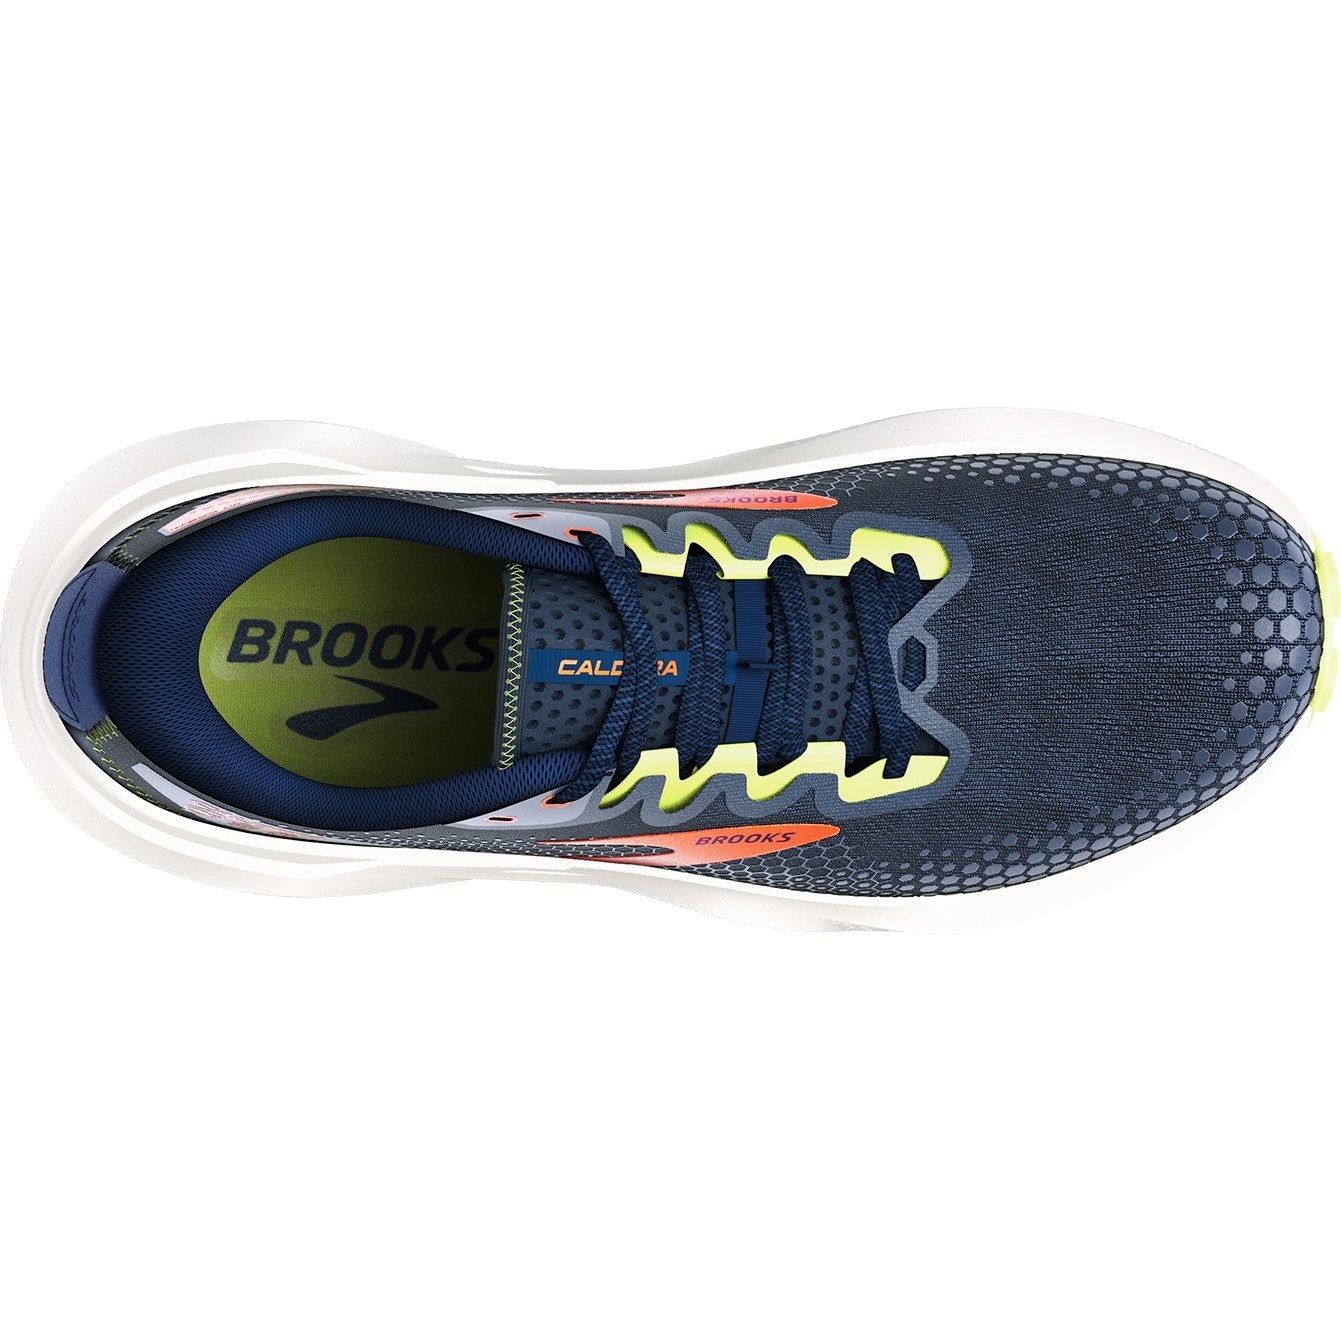 Brooks Caldera 6 - Mens Trail Running Shoes - Navy/Firecracker/Green ...